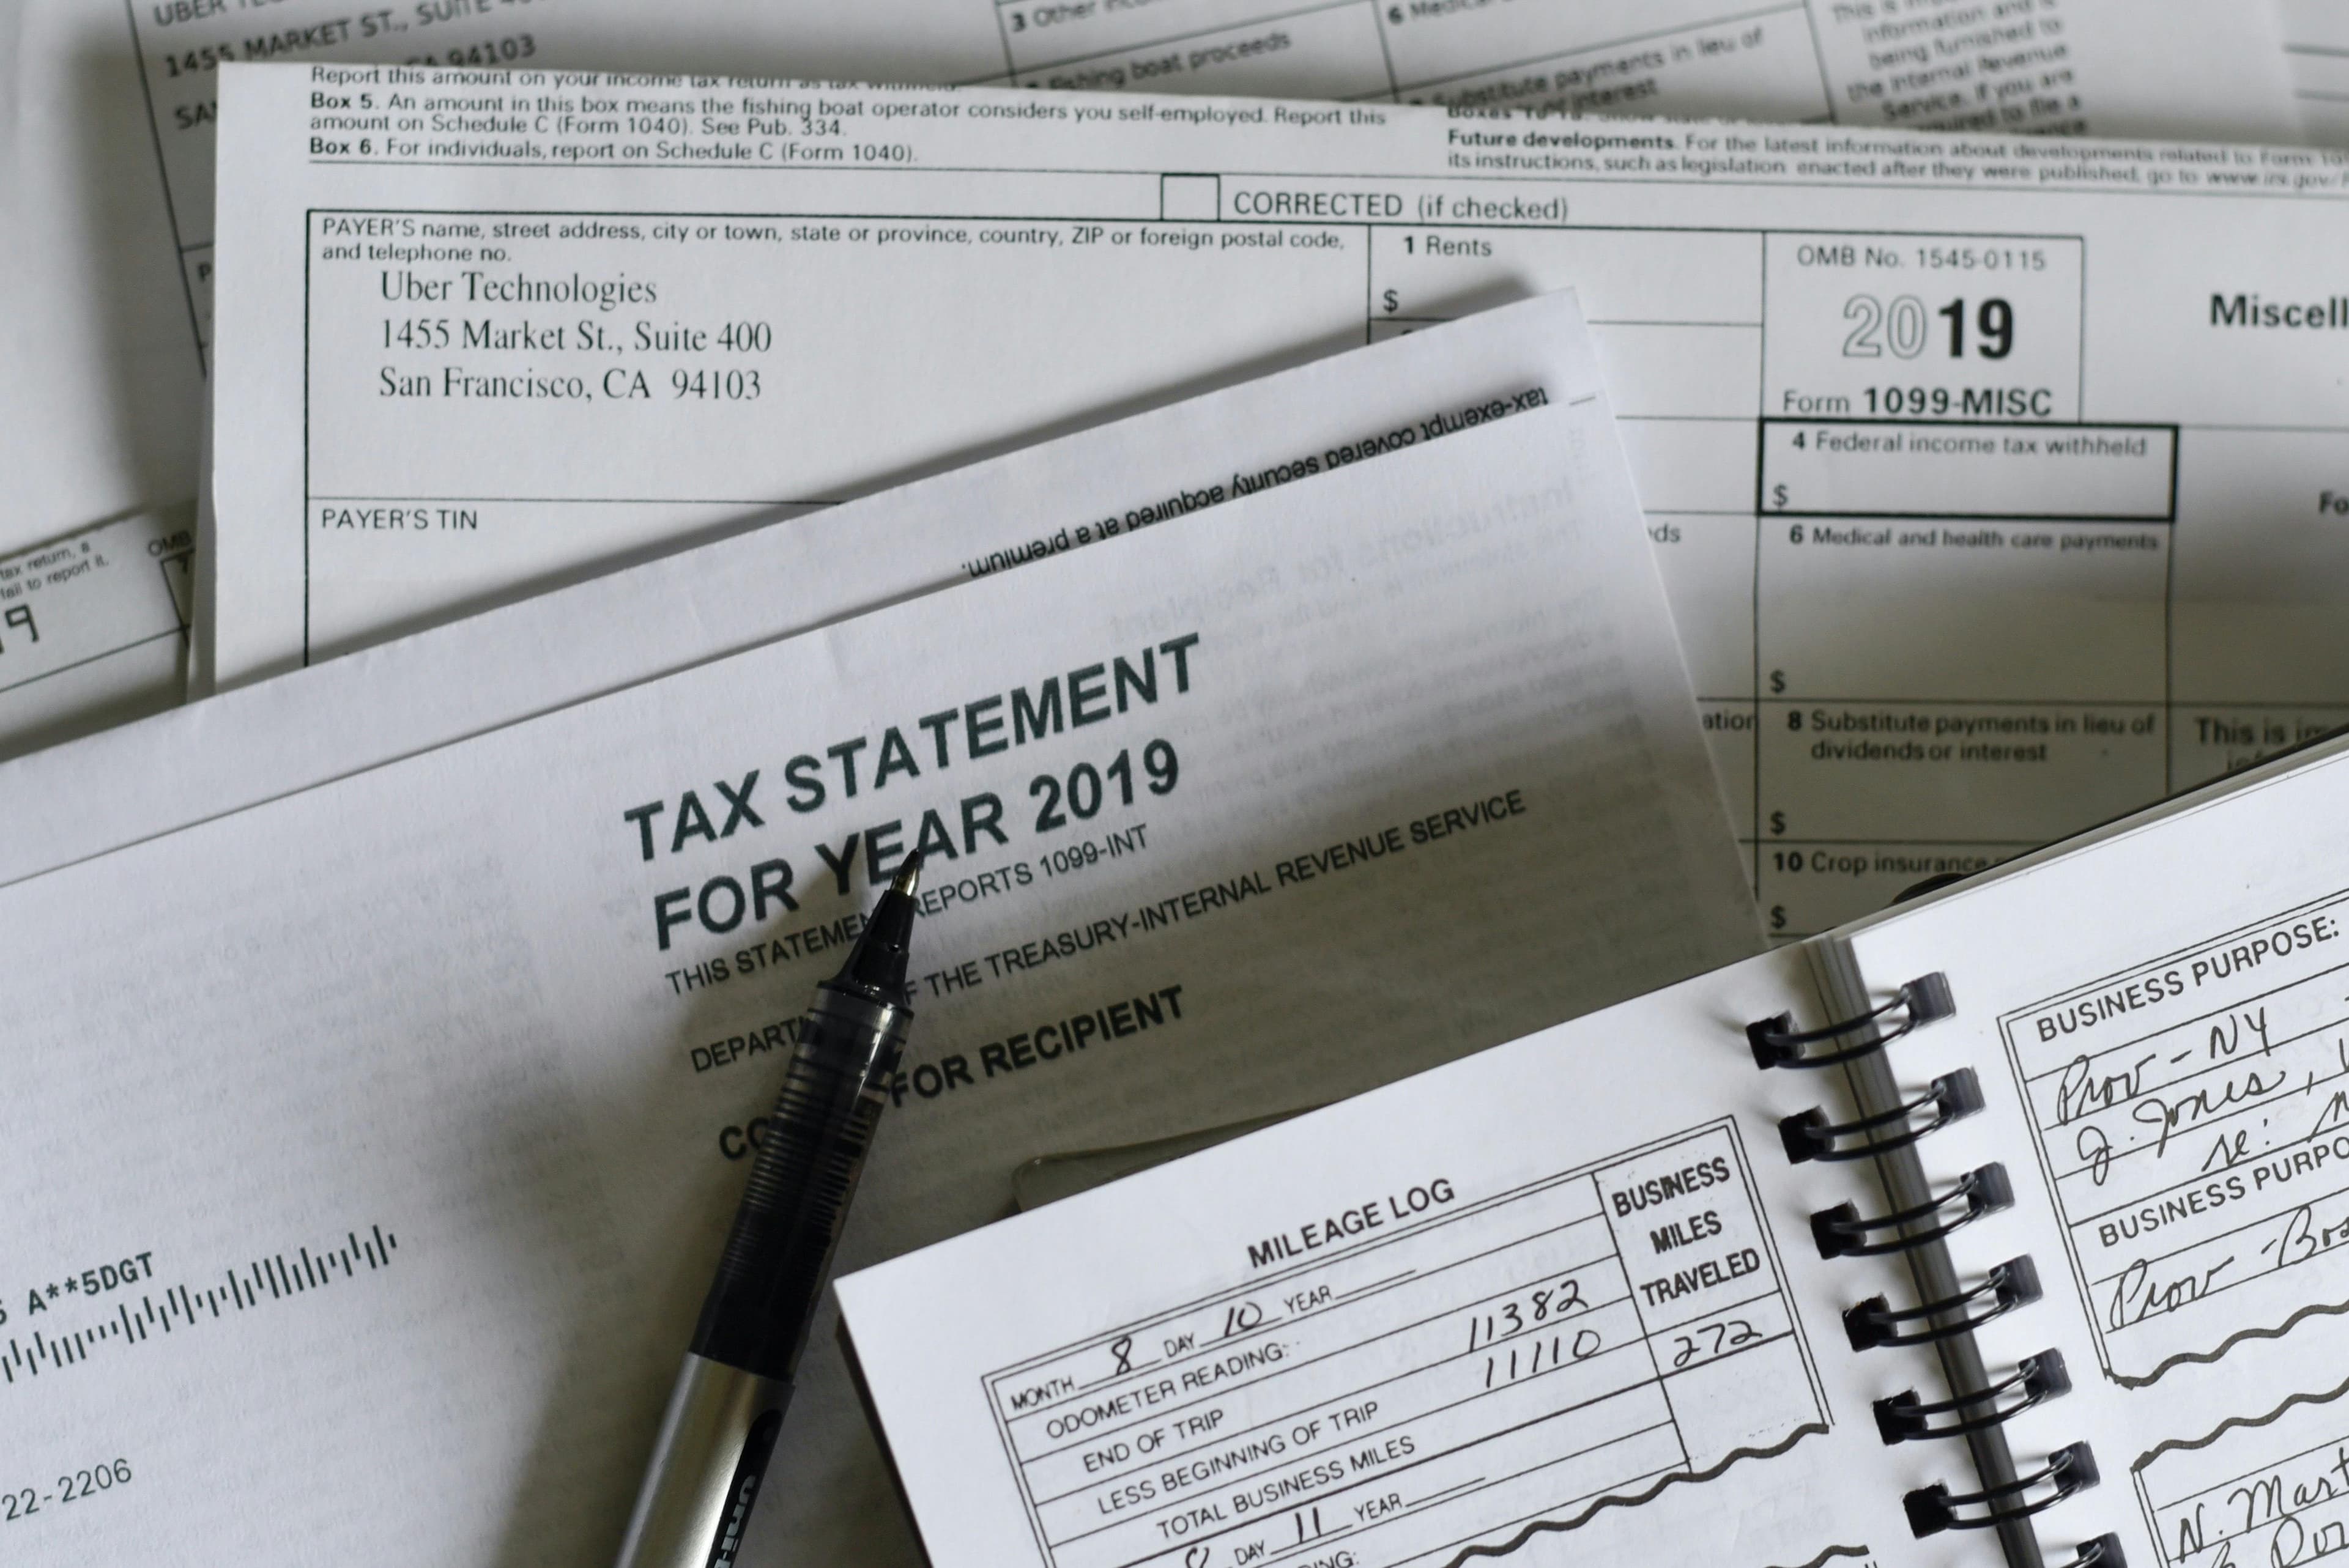 Filing a tax return